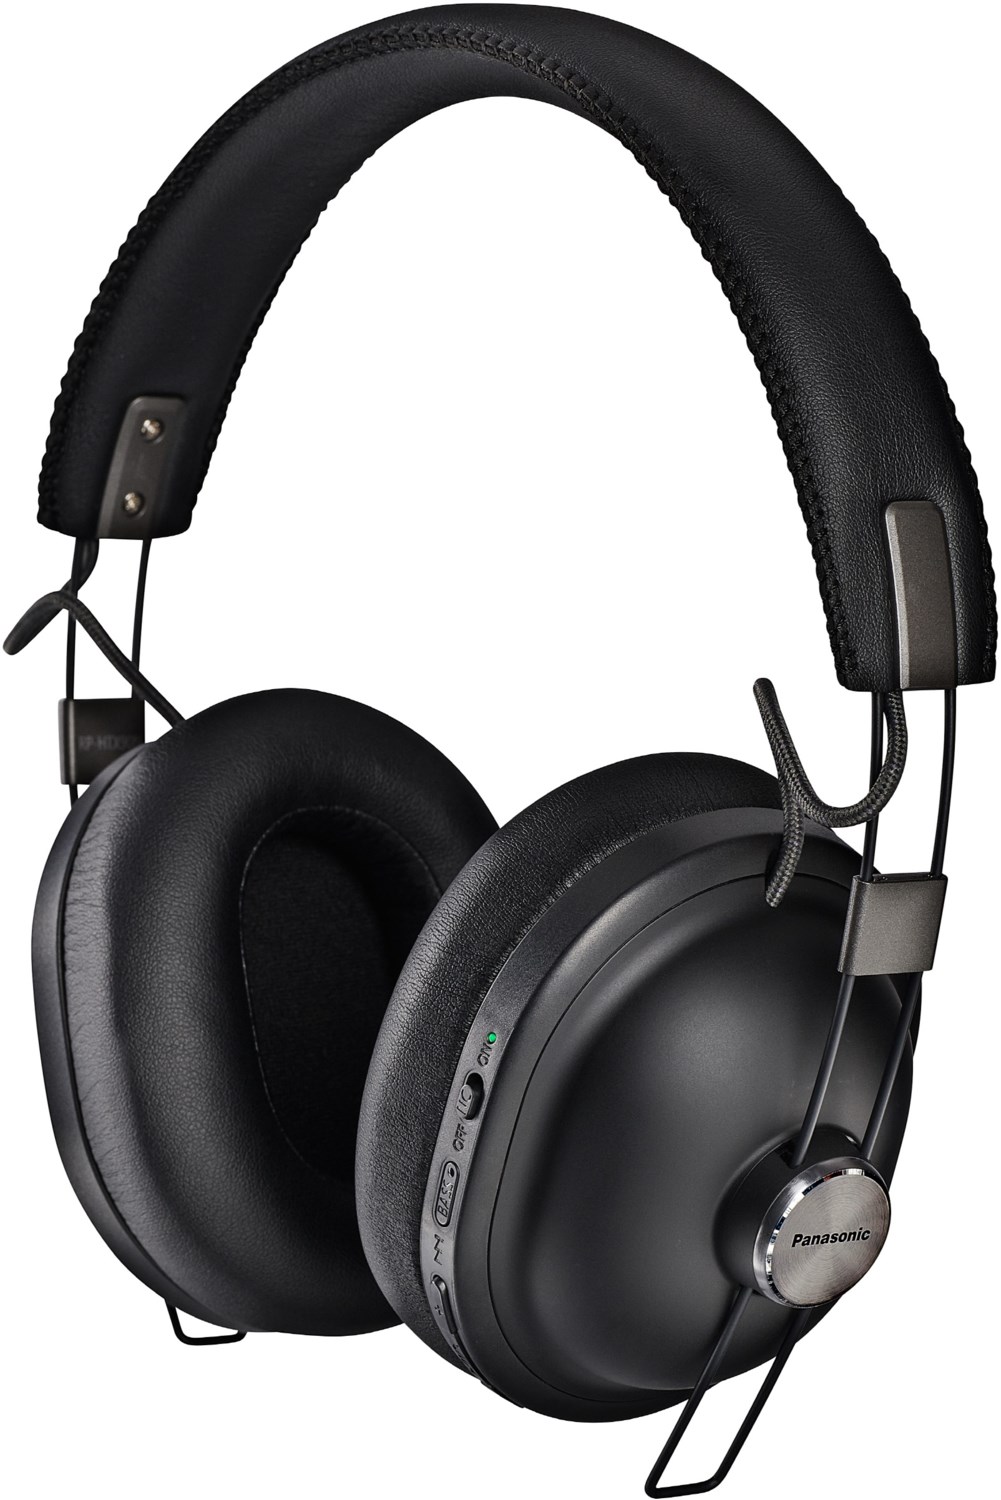 RP-HTX90NE-K Bluetooth-Kopfhörer schwarz